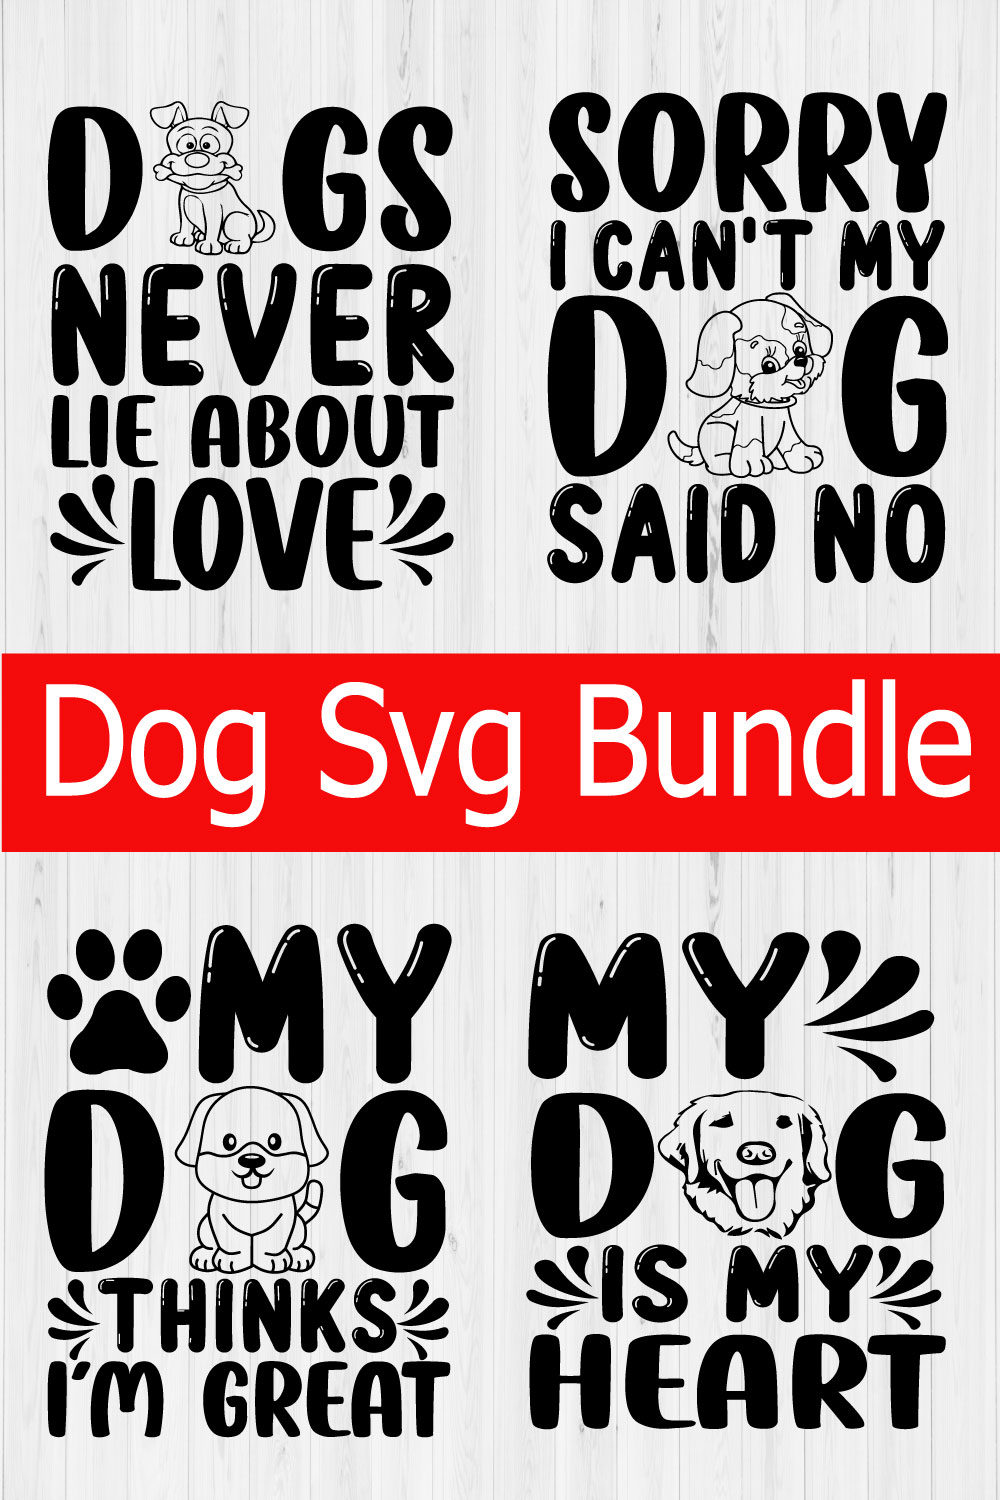 Dog Svg Quotes Bundle Vol3 pinterest preview image.